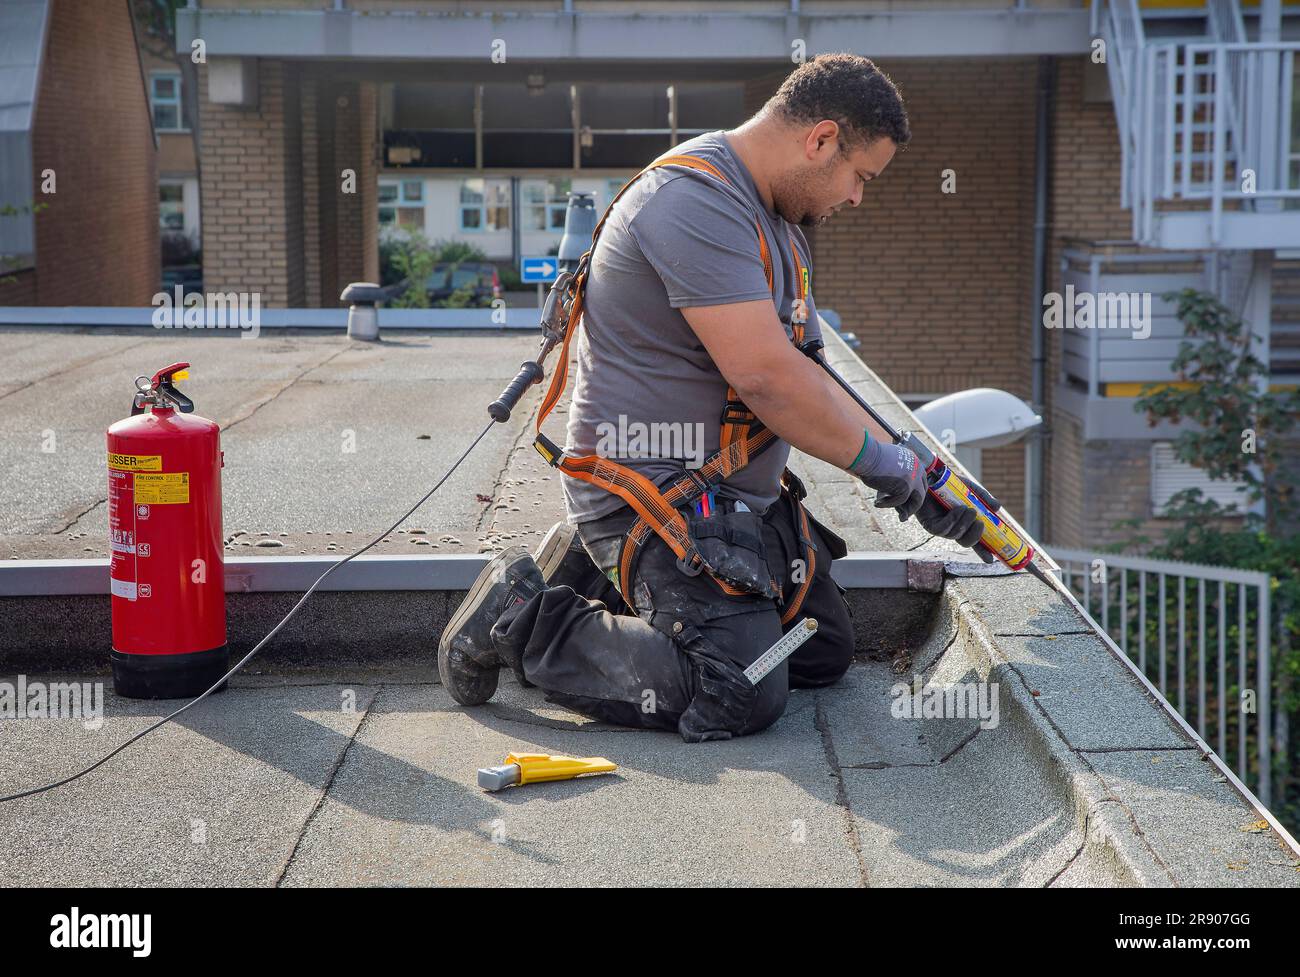 Niederlande, Den Haag; Klempner repariert einen Teil eines Dachs, während er mit einem speziellen harnas an einem Fallschutz-Schwerlastanker auf dem Dach befestigt ist. Stockfoto